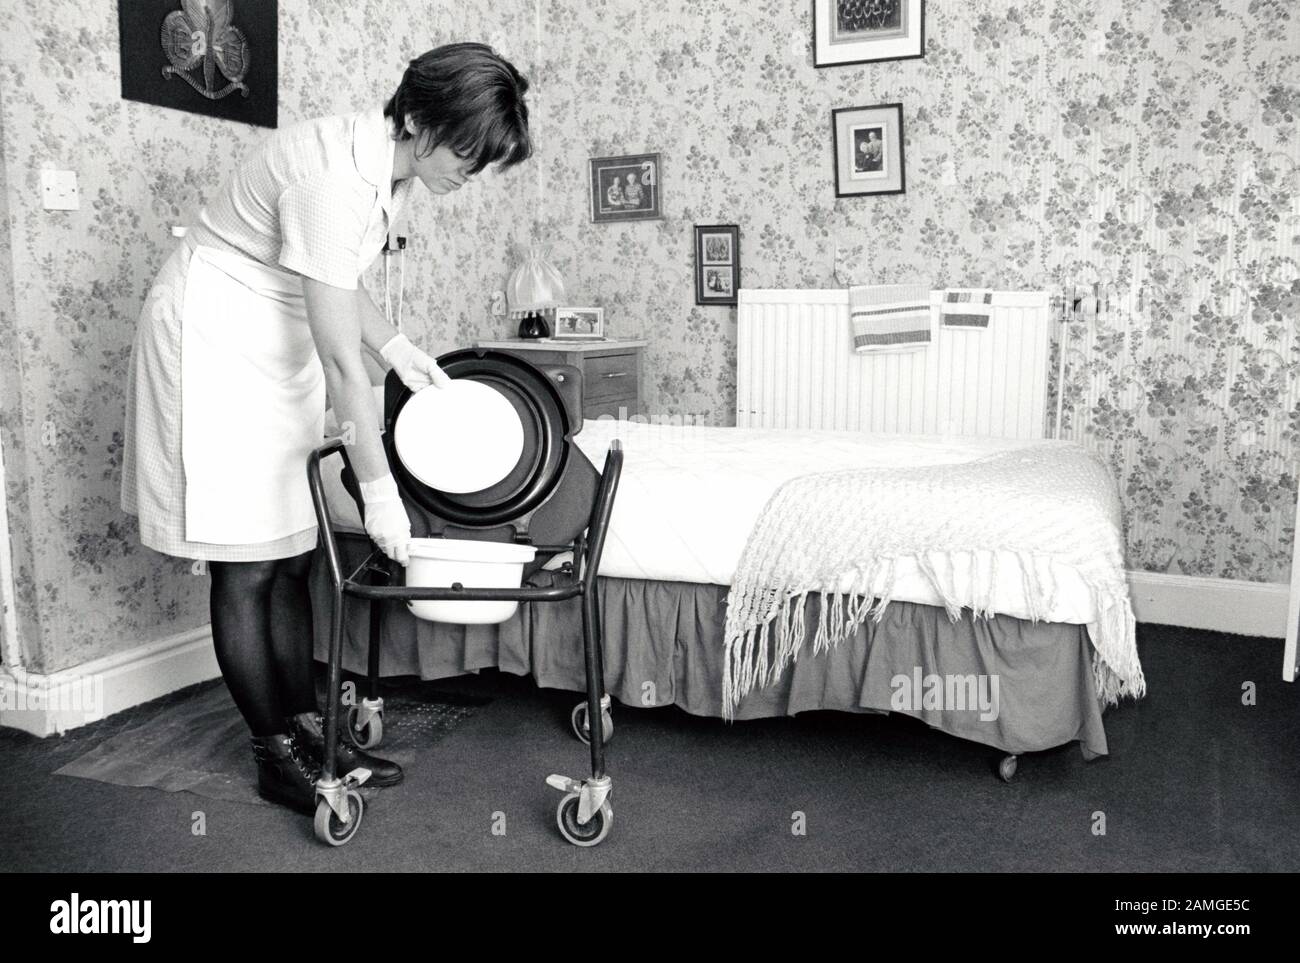 Carer cleaning resident's comode, residential home for the elderly, Nottingham UK 1995 Stock Photo